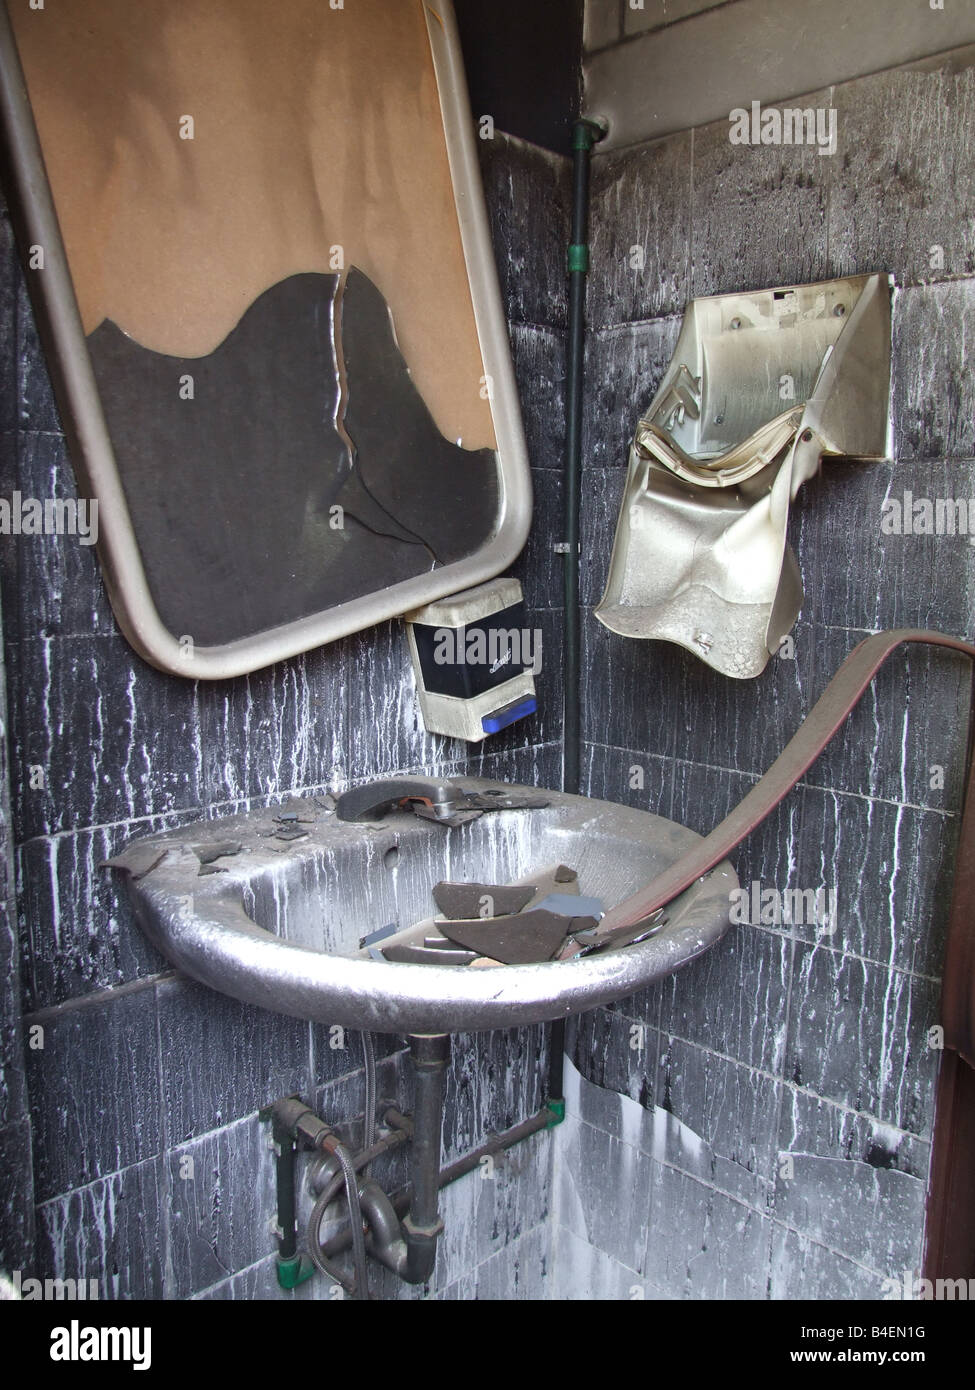 Détail d'une salle de bains privative détruit par un incendie Banque D'Images